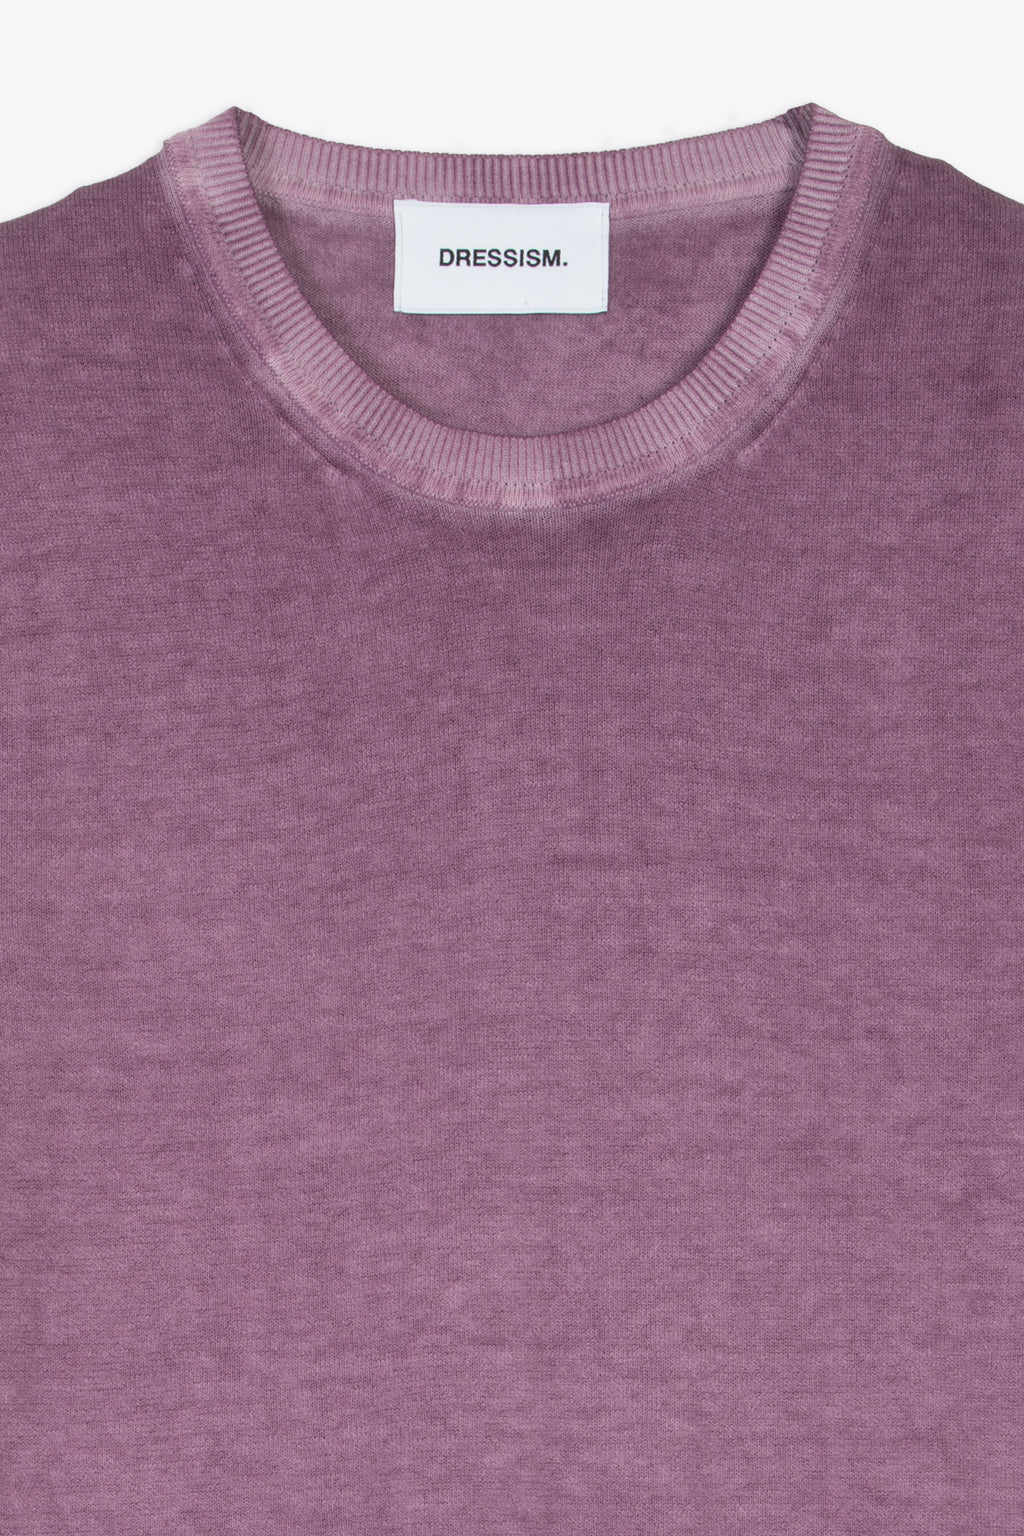 alt-image__Washed-purple-cotton-knit-t-shirt